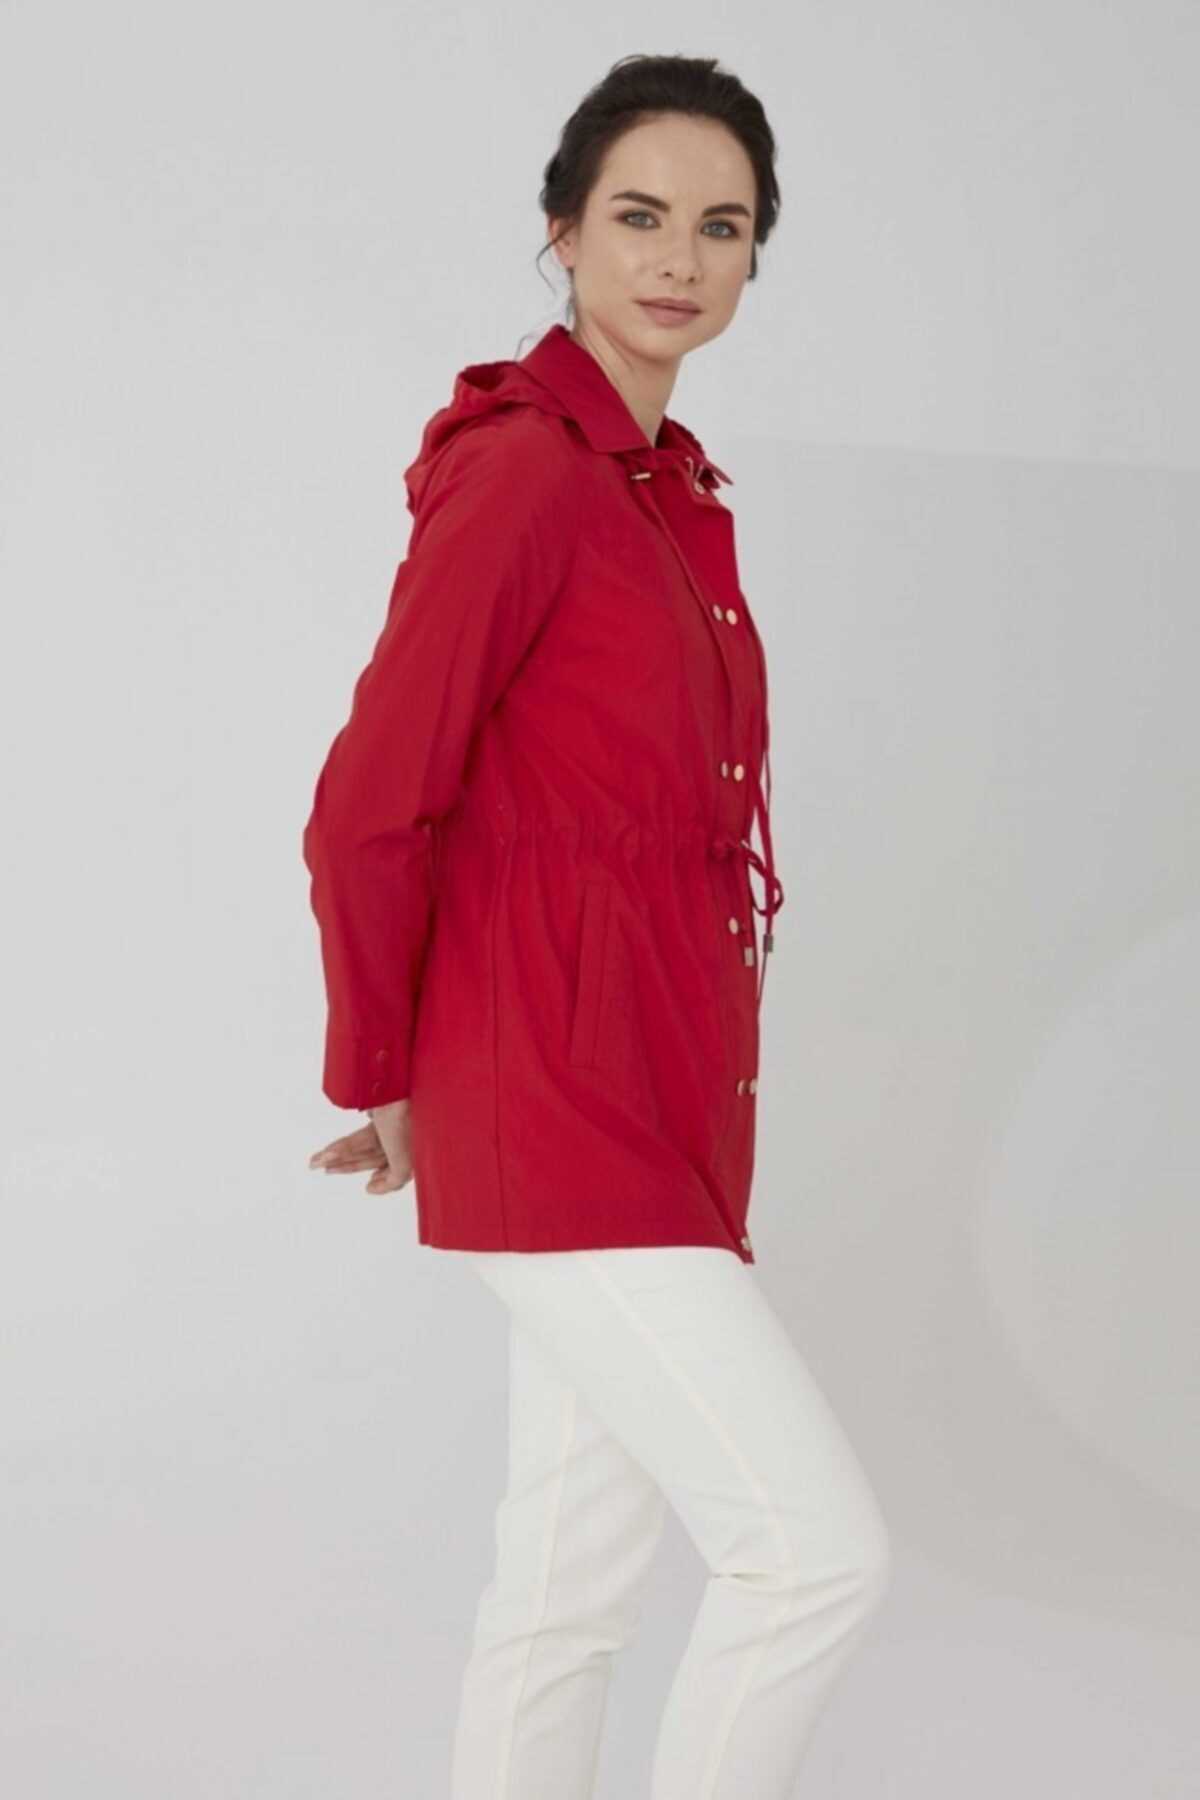 مانتو پاییزی زنانه اسپرت جدید برند Selen Giyim رنگ قرمز ty104915749